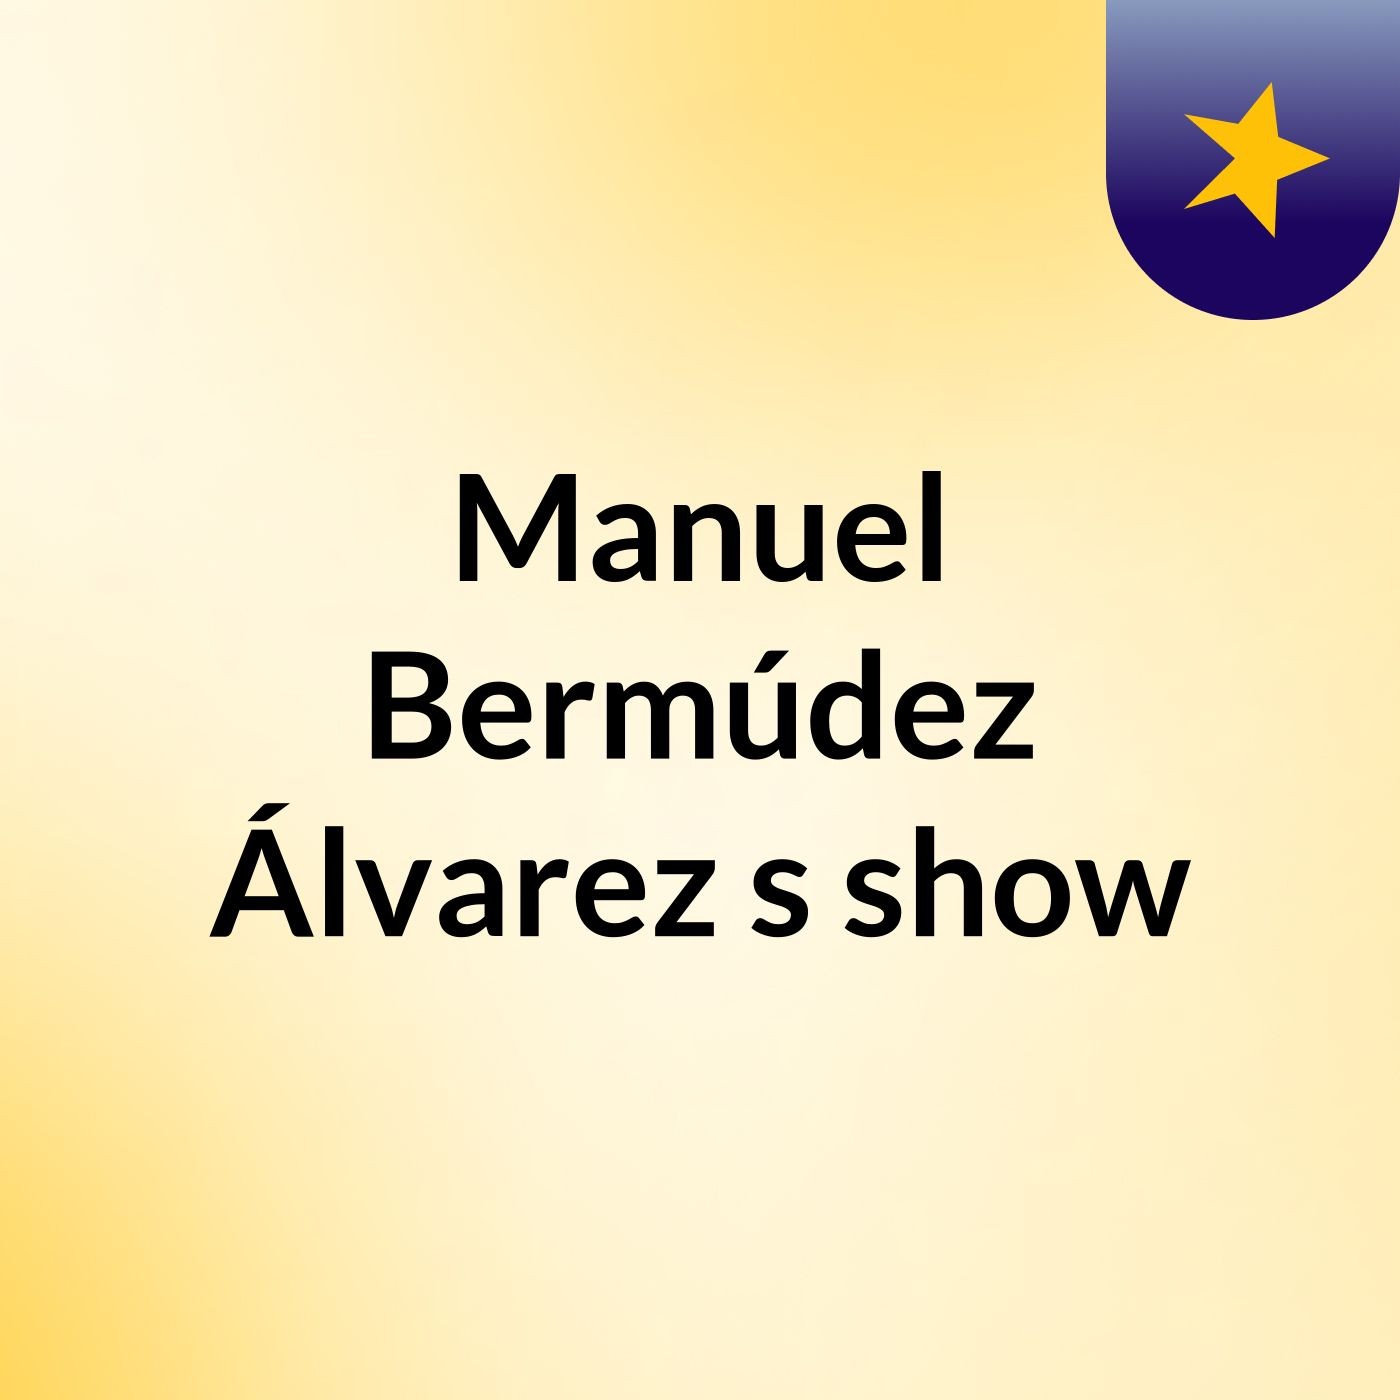 Manuel Bermúdez Álvarez's show